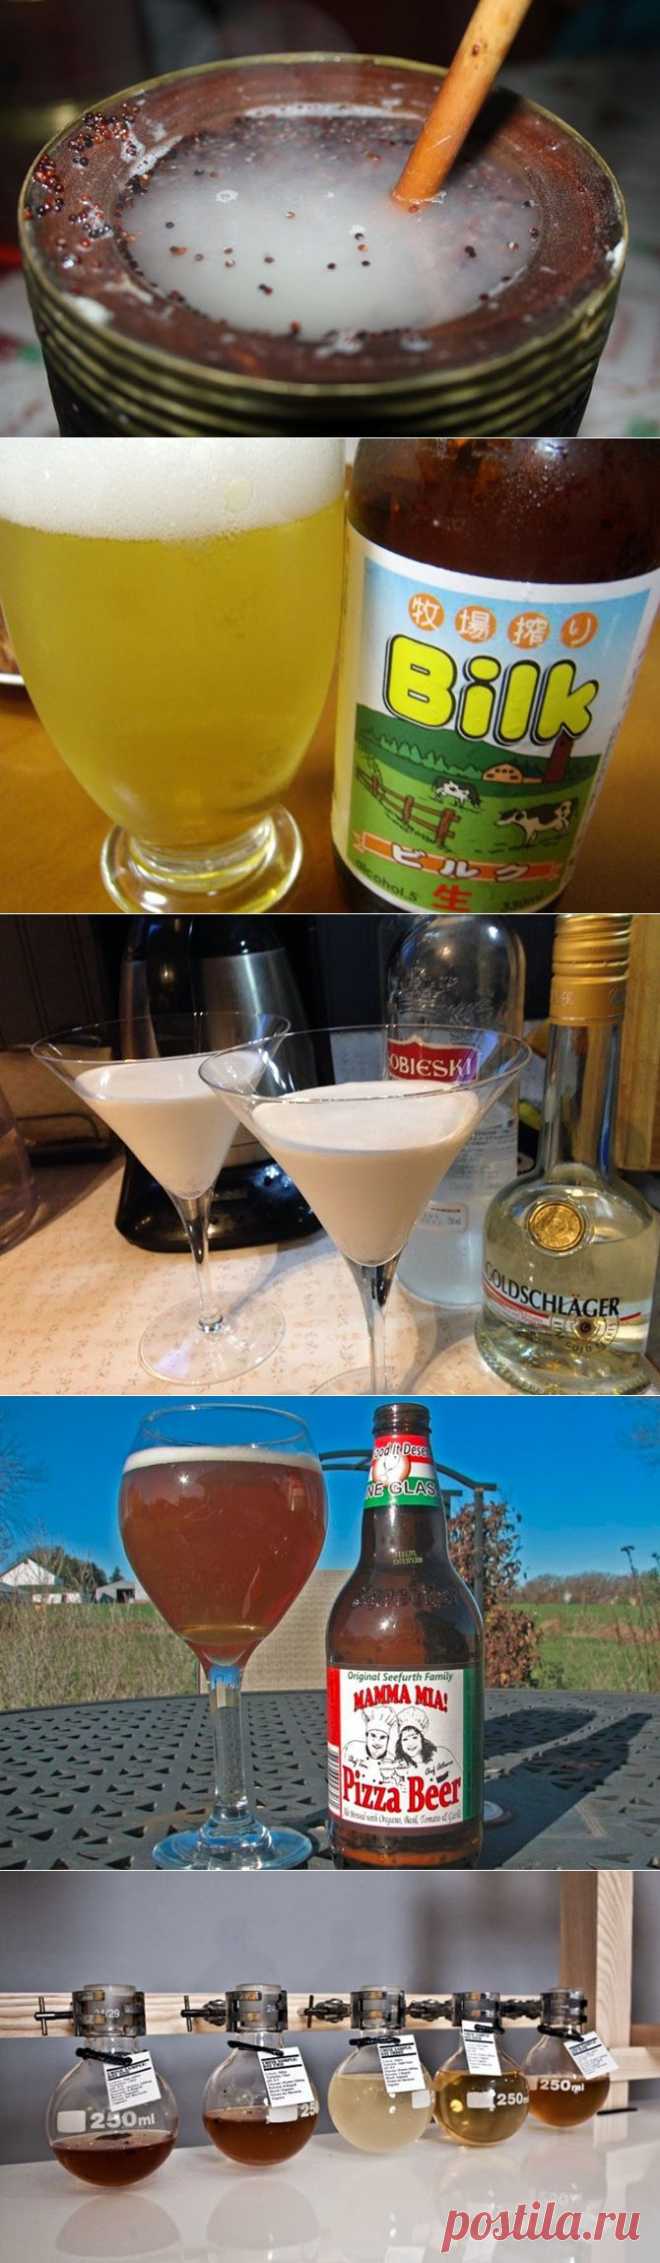 (+1) тема - Самые странные алкогольные напитки в мире | НАУКА И ЖИЗНЬ